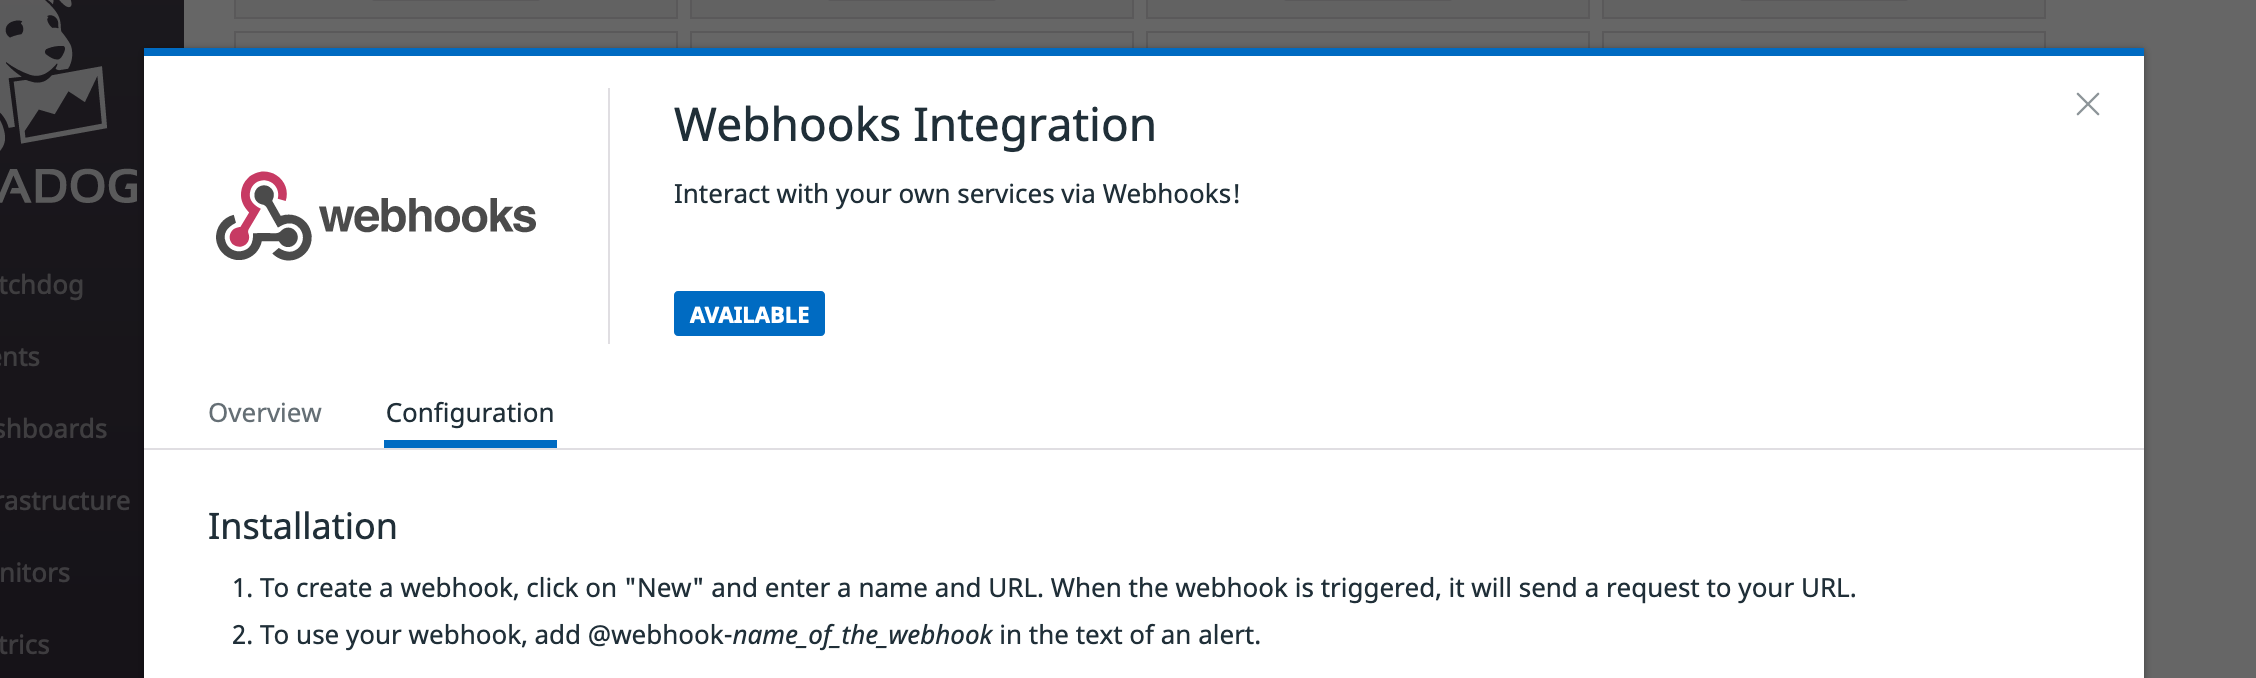 Webhooks integration screen